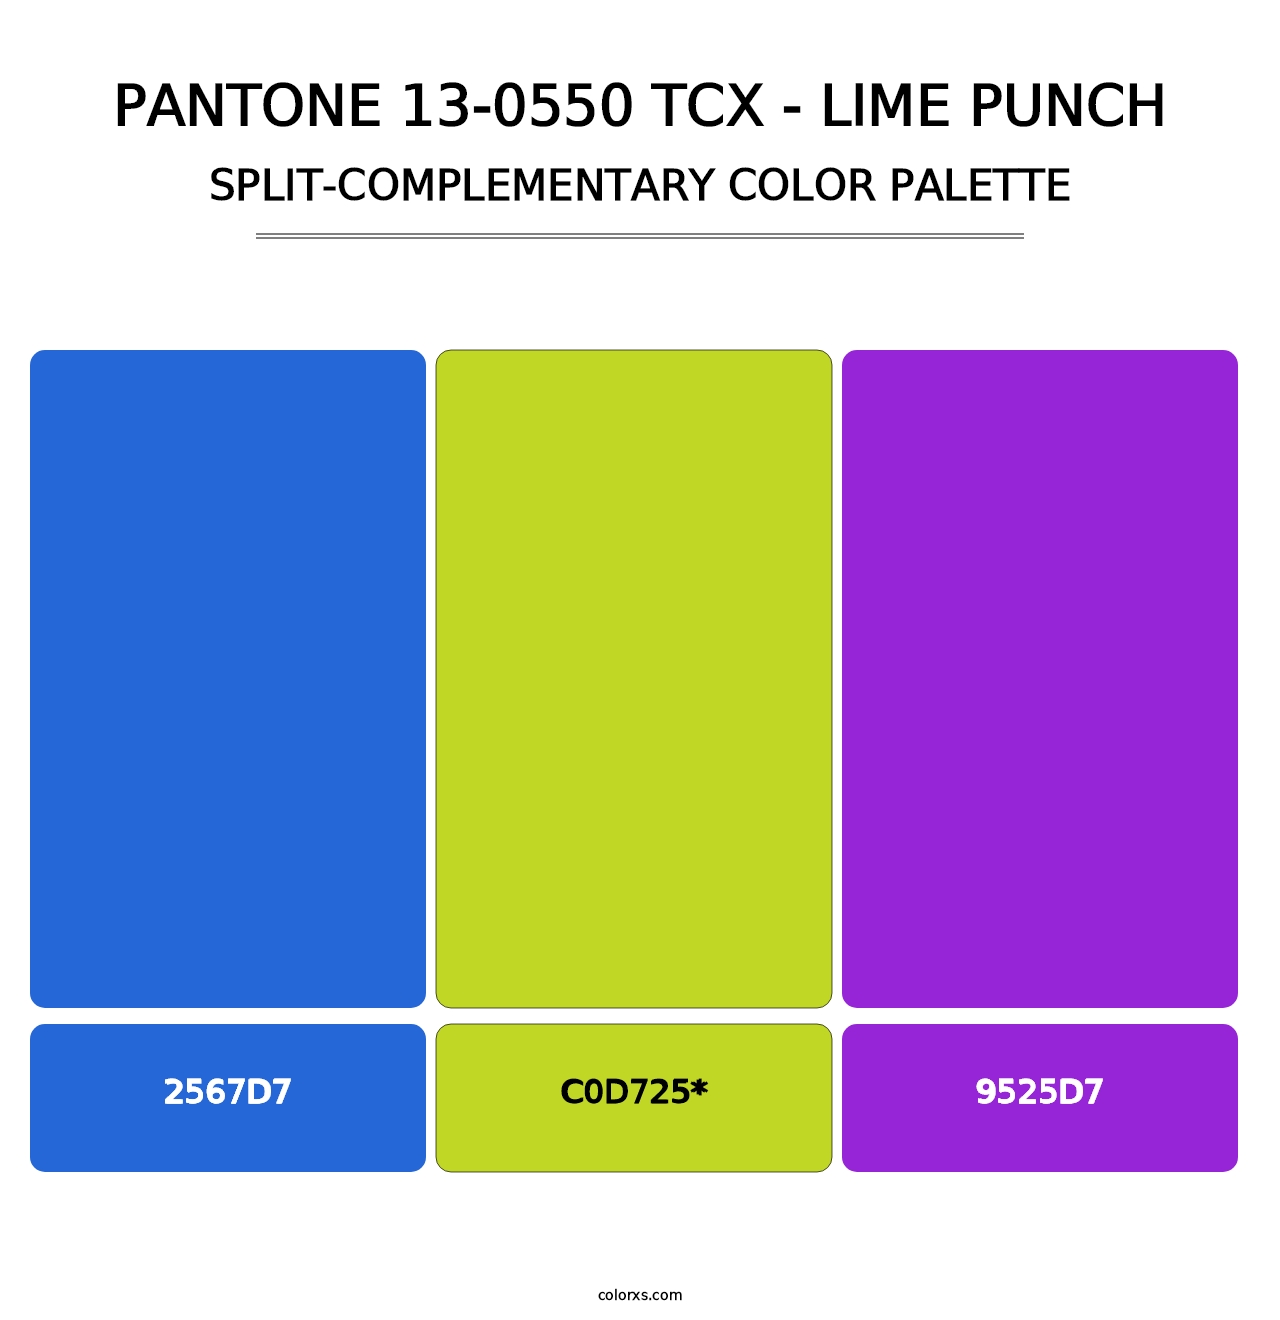 PANTONE 13-0550 TCX - Lime Punch - Split-Complementary Color Palette